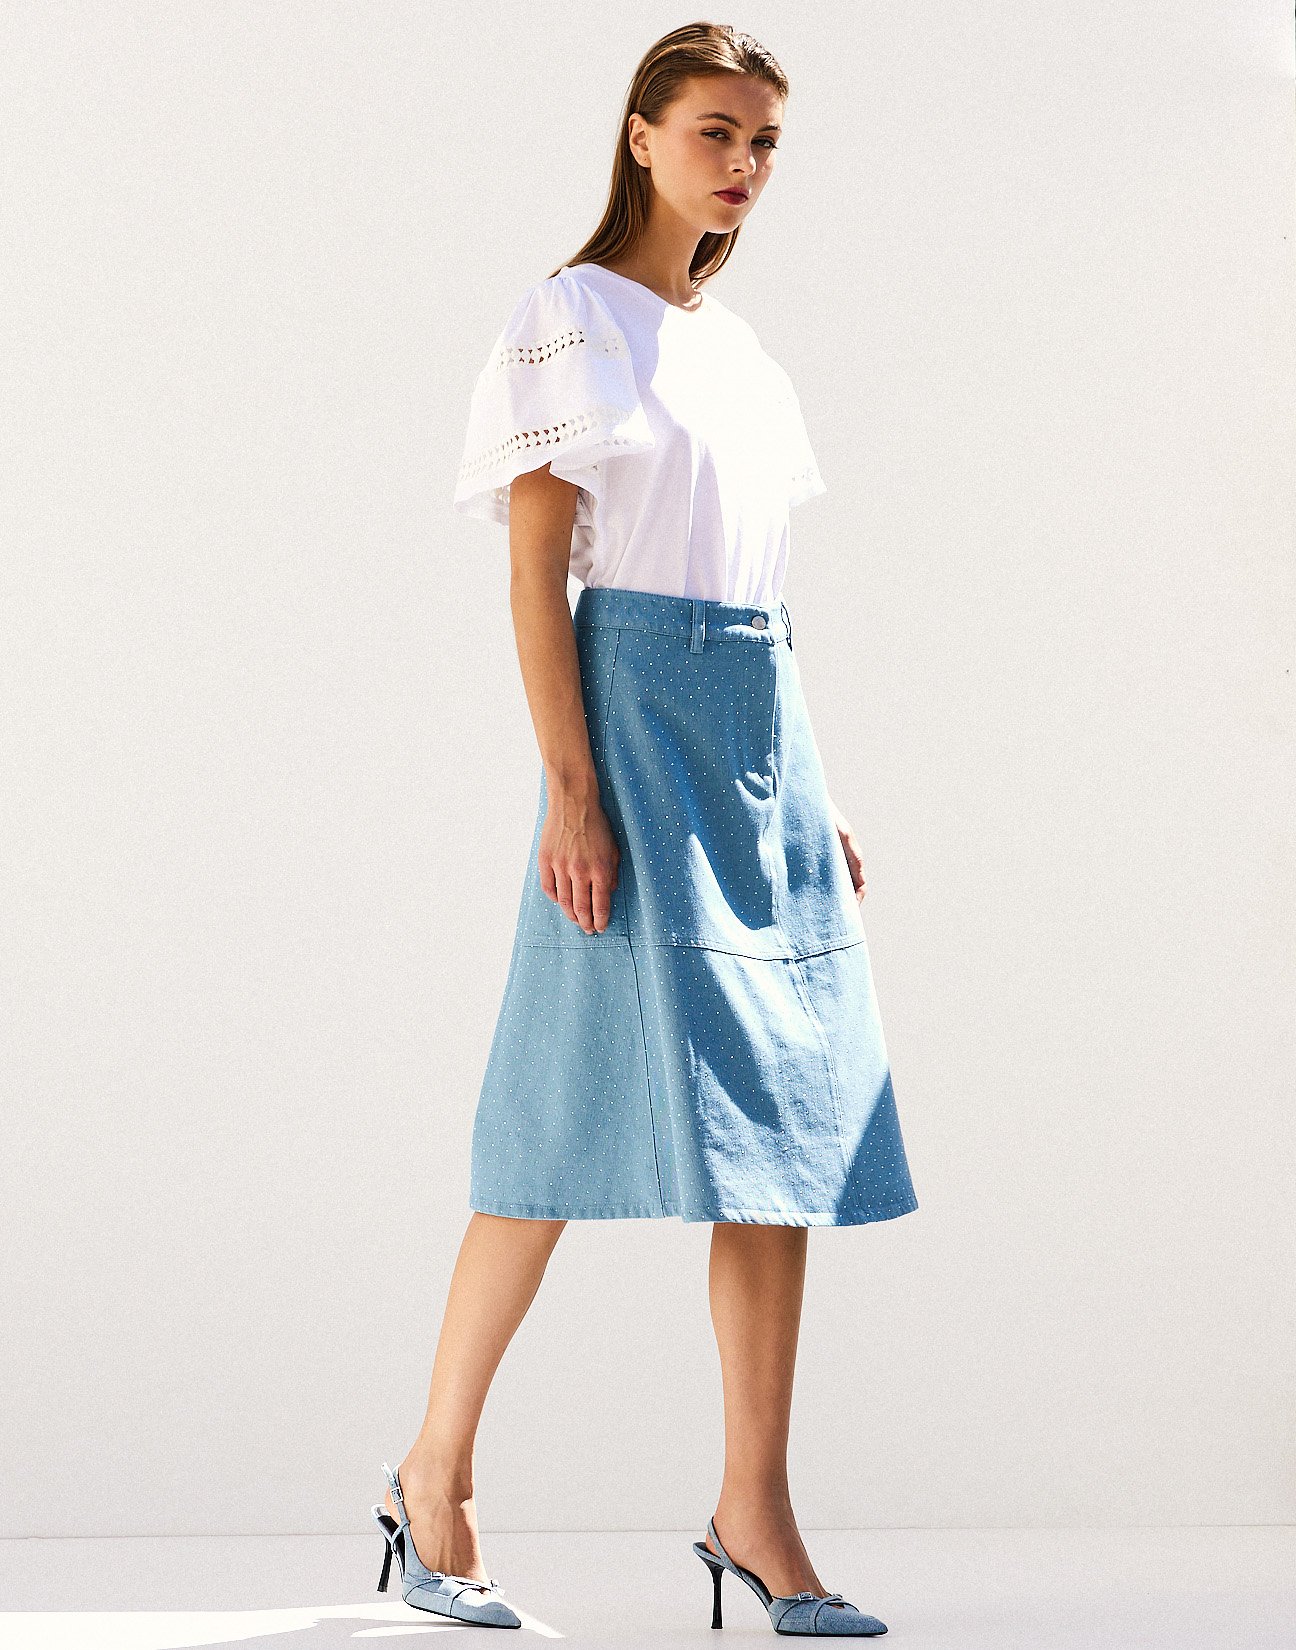 Denim skirt with rhinestone